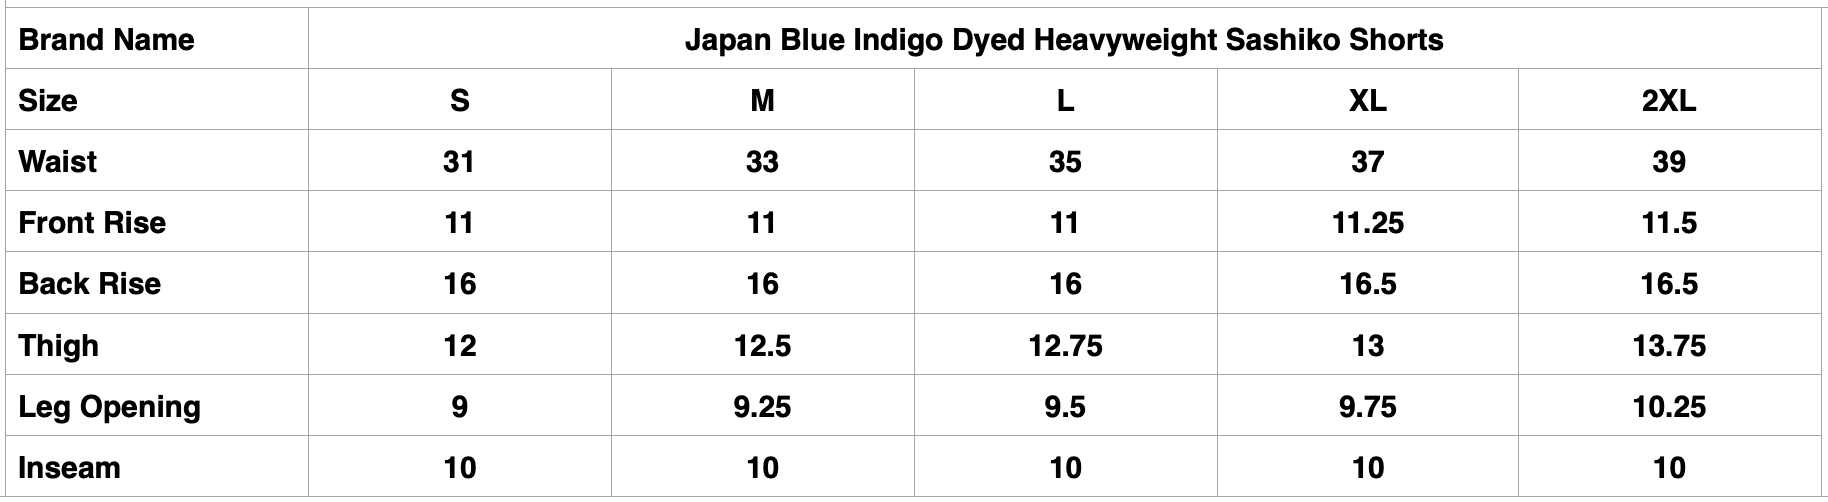 Japan Blue Indigo Dyed Heavyweight "Diamond" Sashiko Shorts